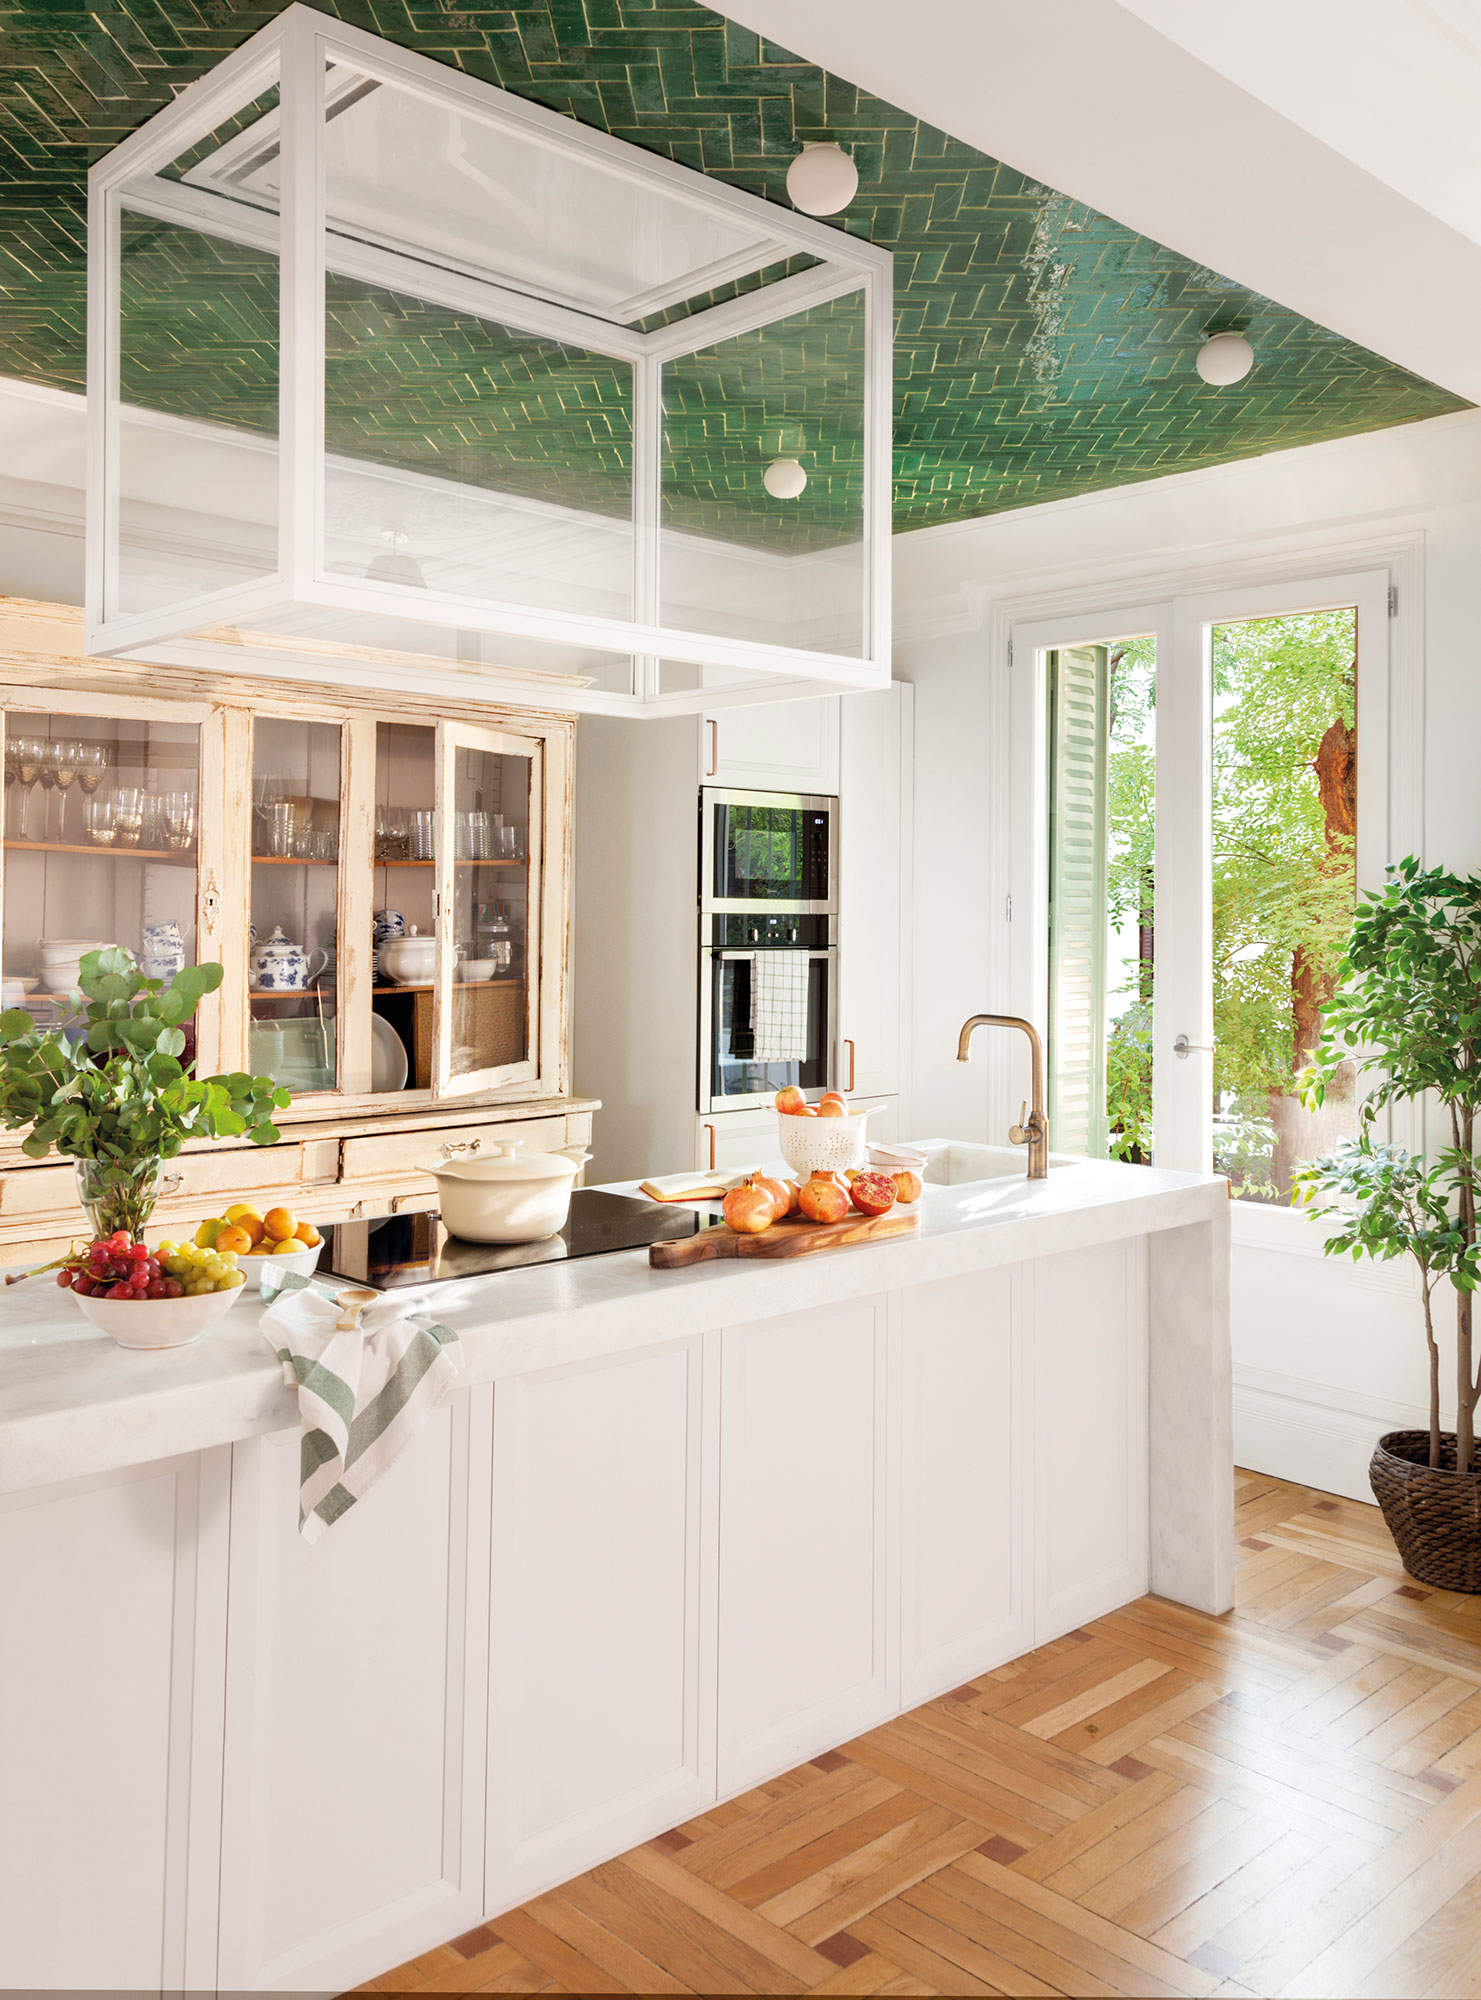 Cocina con azulejos verdes en el techo, isla blanca y campana extractora.